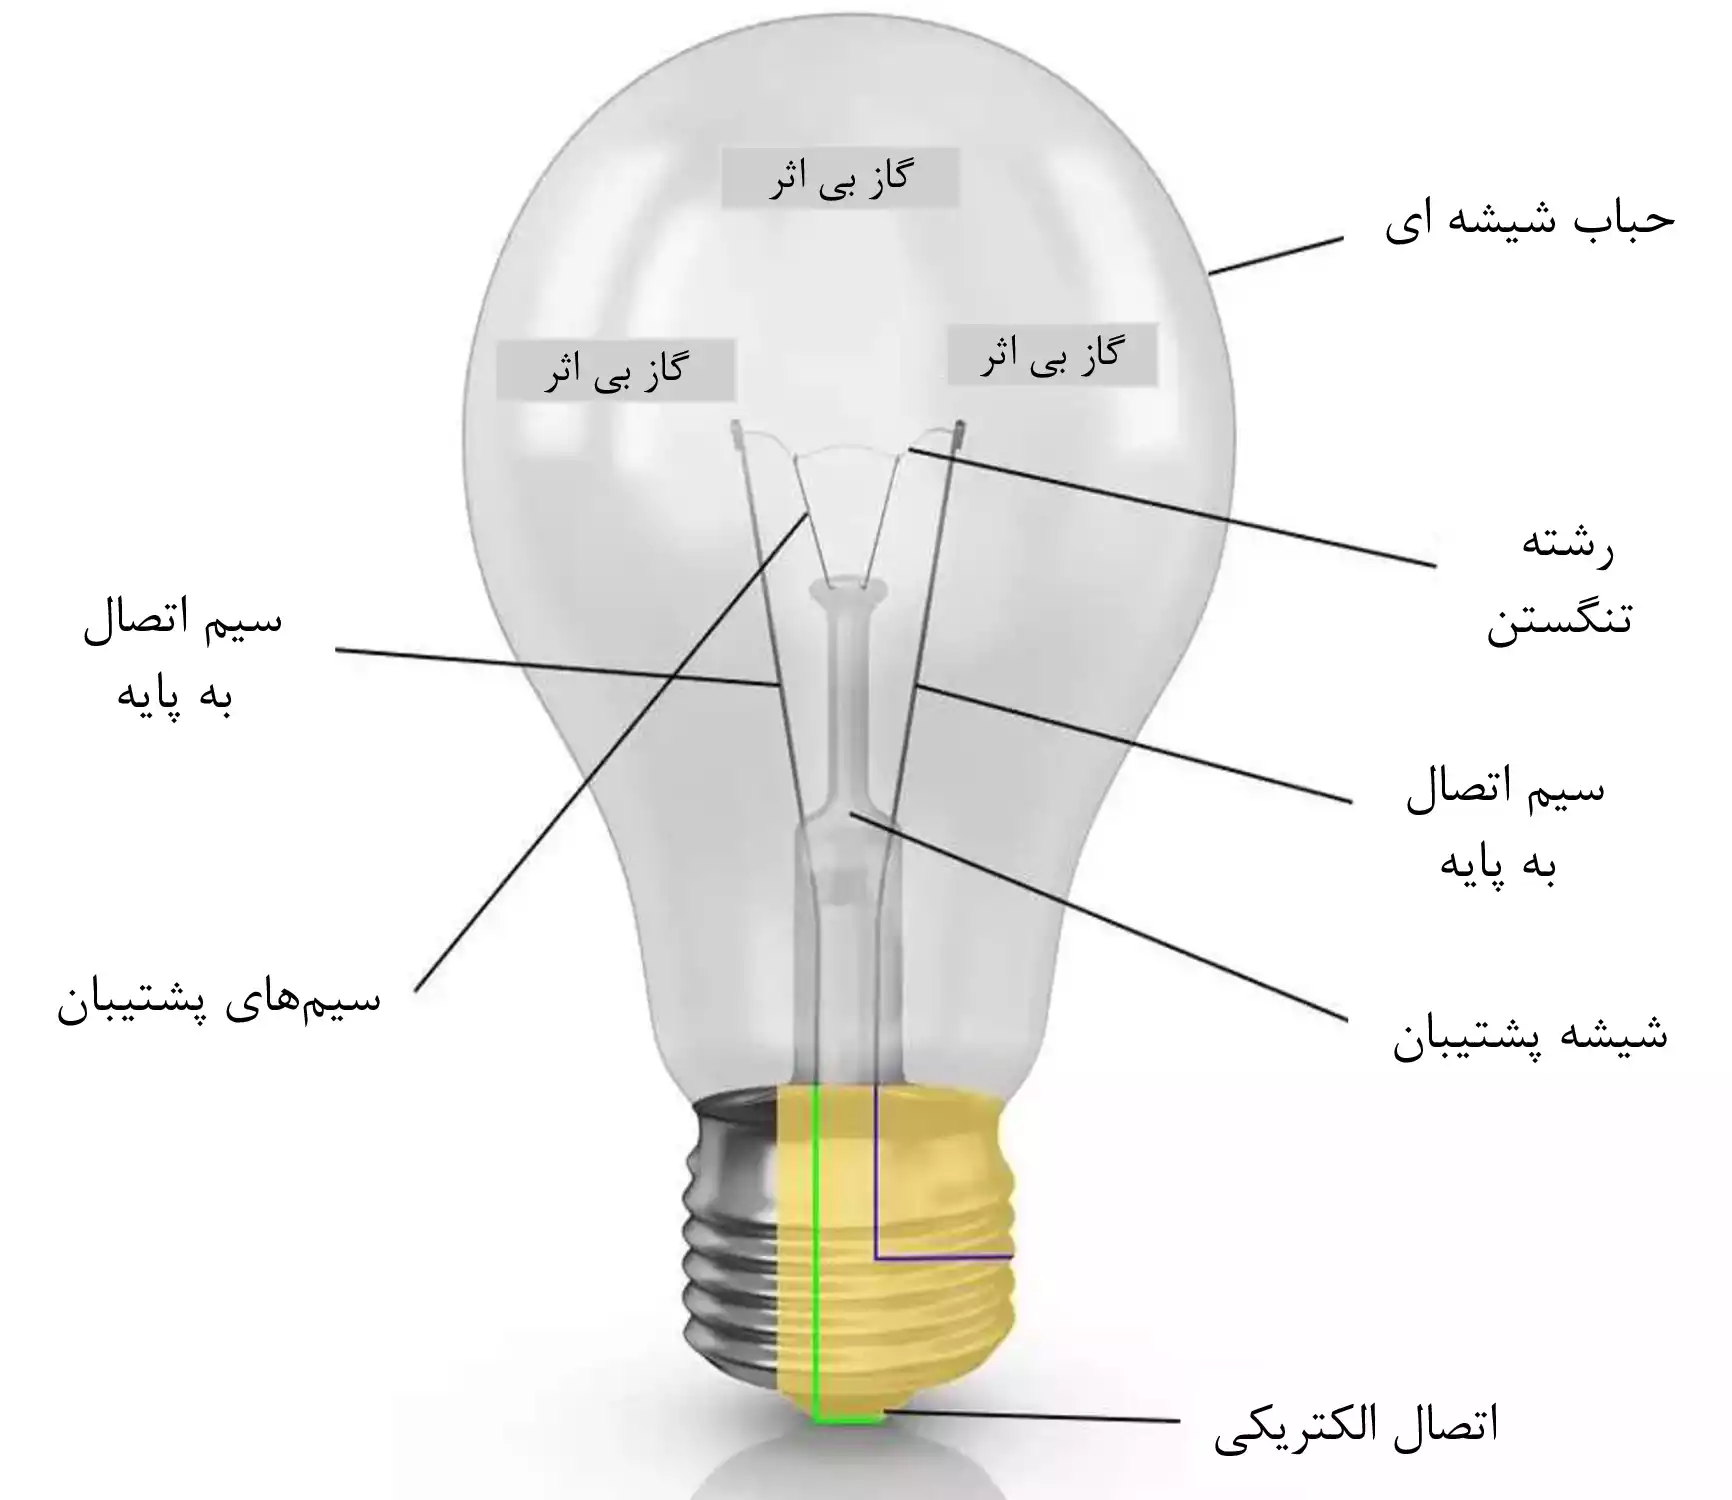 لامپ رشته ای - ماه صنعت انرژی